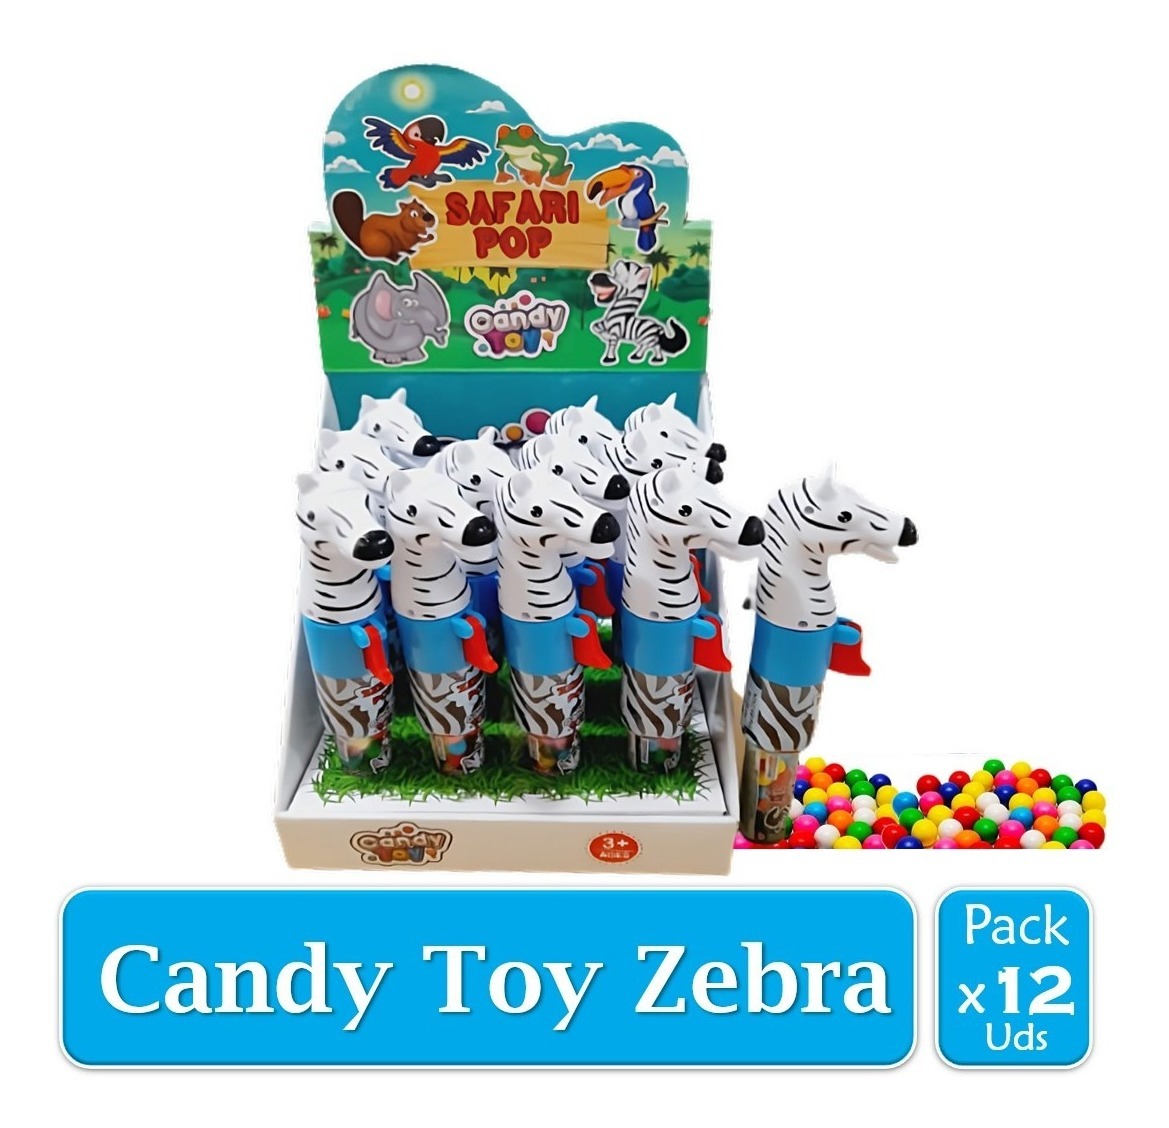 Candy Toy Zebra Safari Pop X 12 Uds